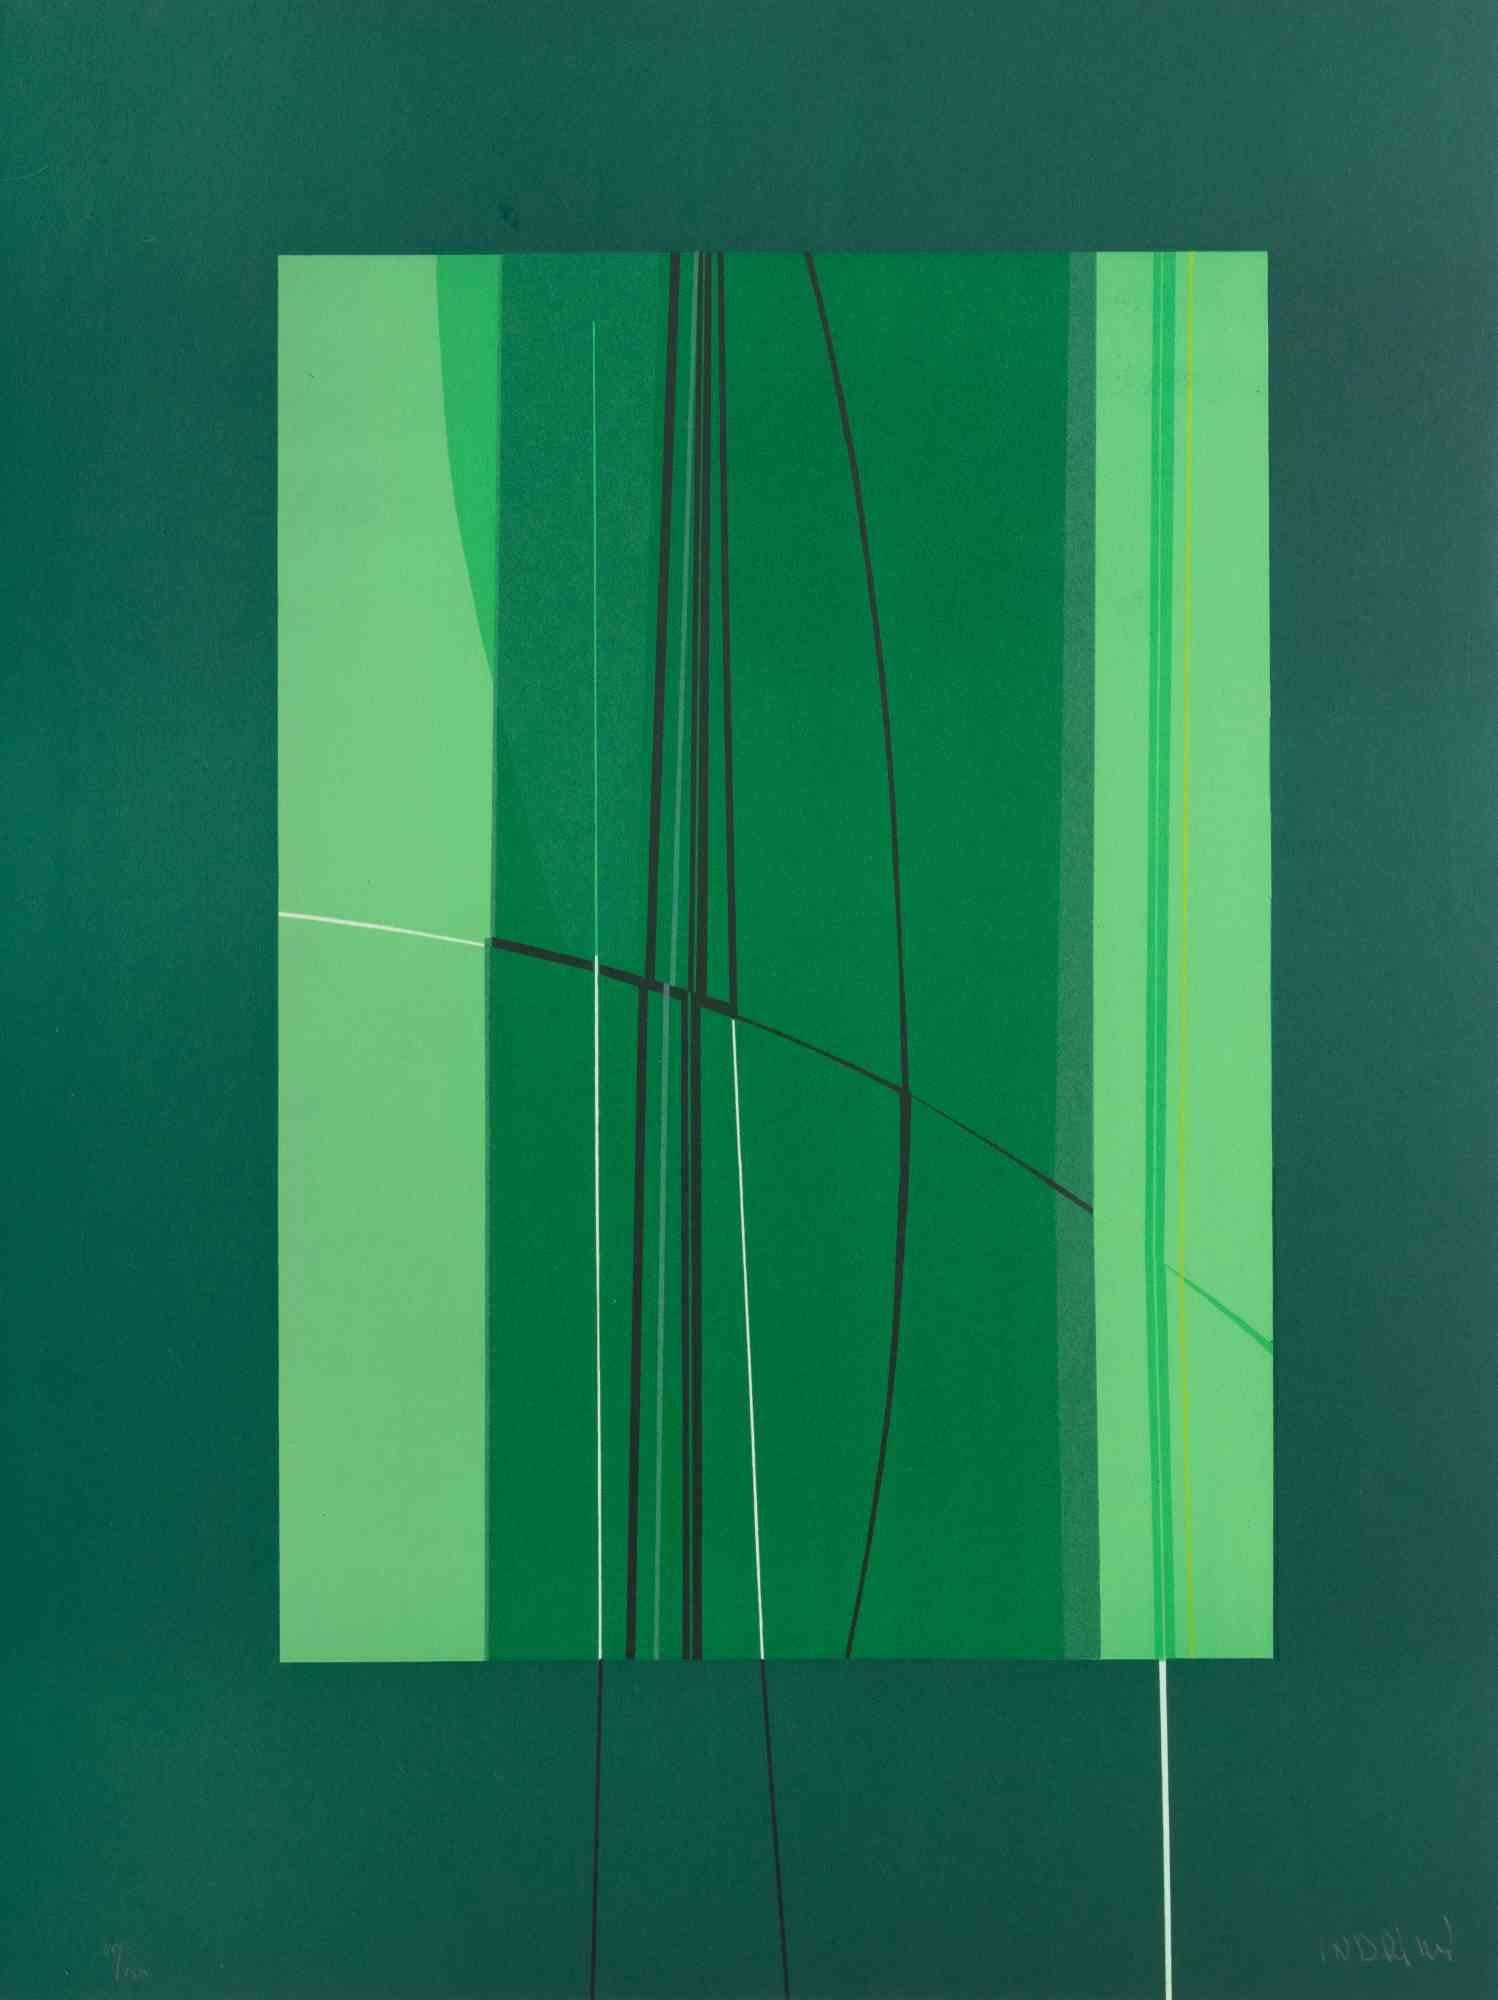 Green est une œuvre d'art contemporain réalisée par Lorenzo Indrimi dans les années 1970.

Lithographie en couleurs mélangées.

Signé à la main et daté dans la marge inférieure.

Édition de 40/150.

